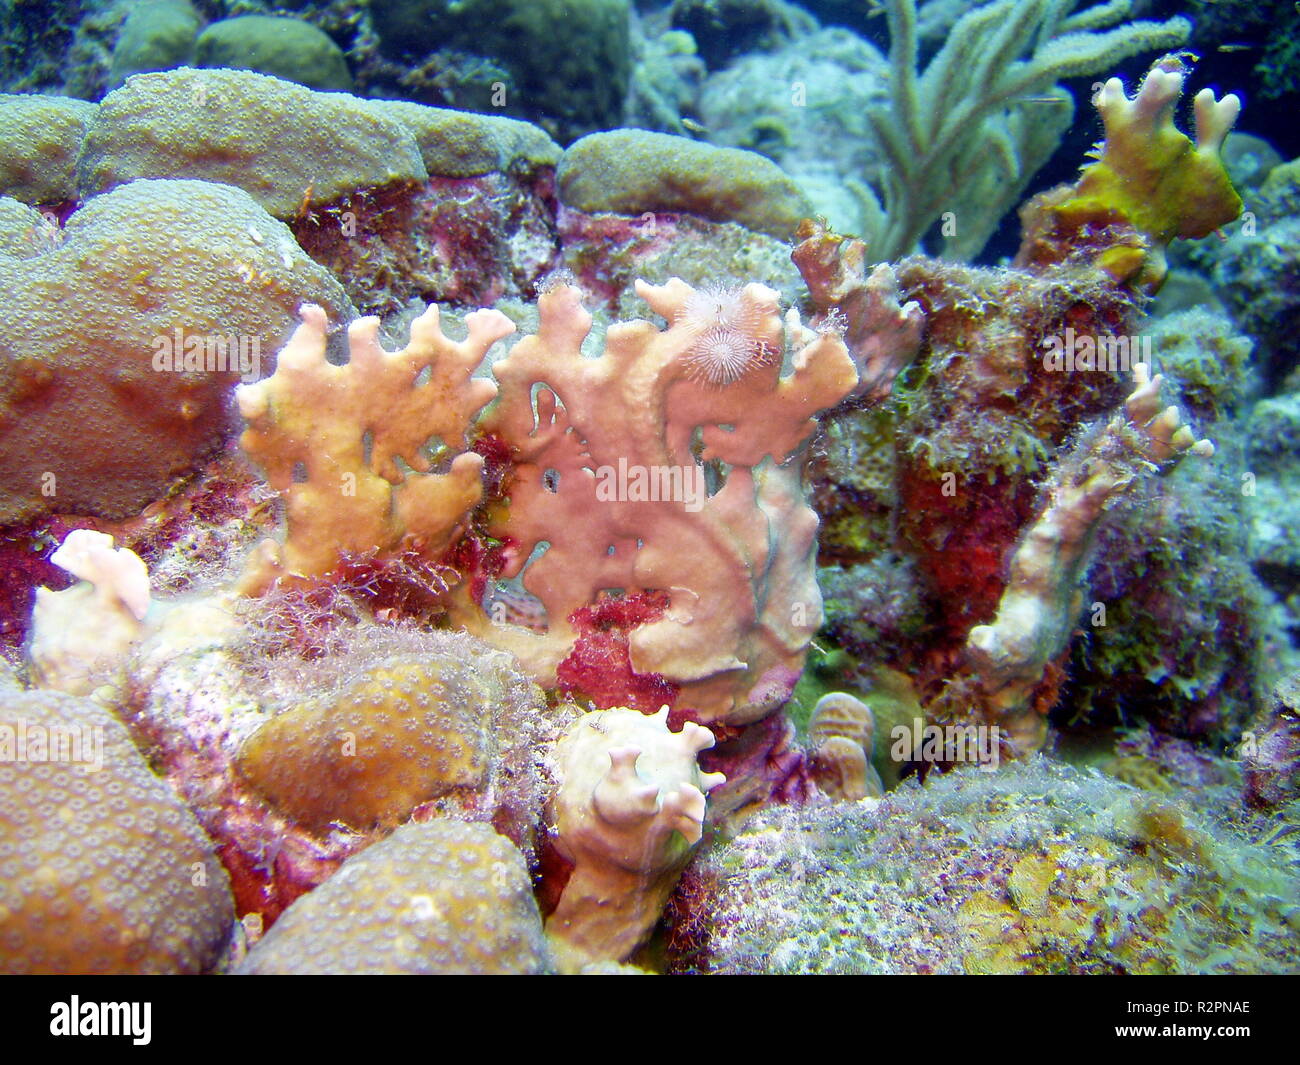 underwater photos Stock Photo